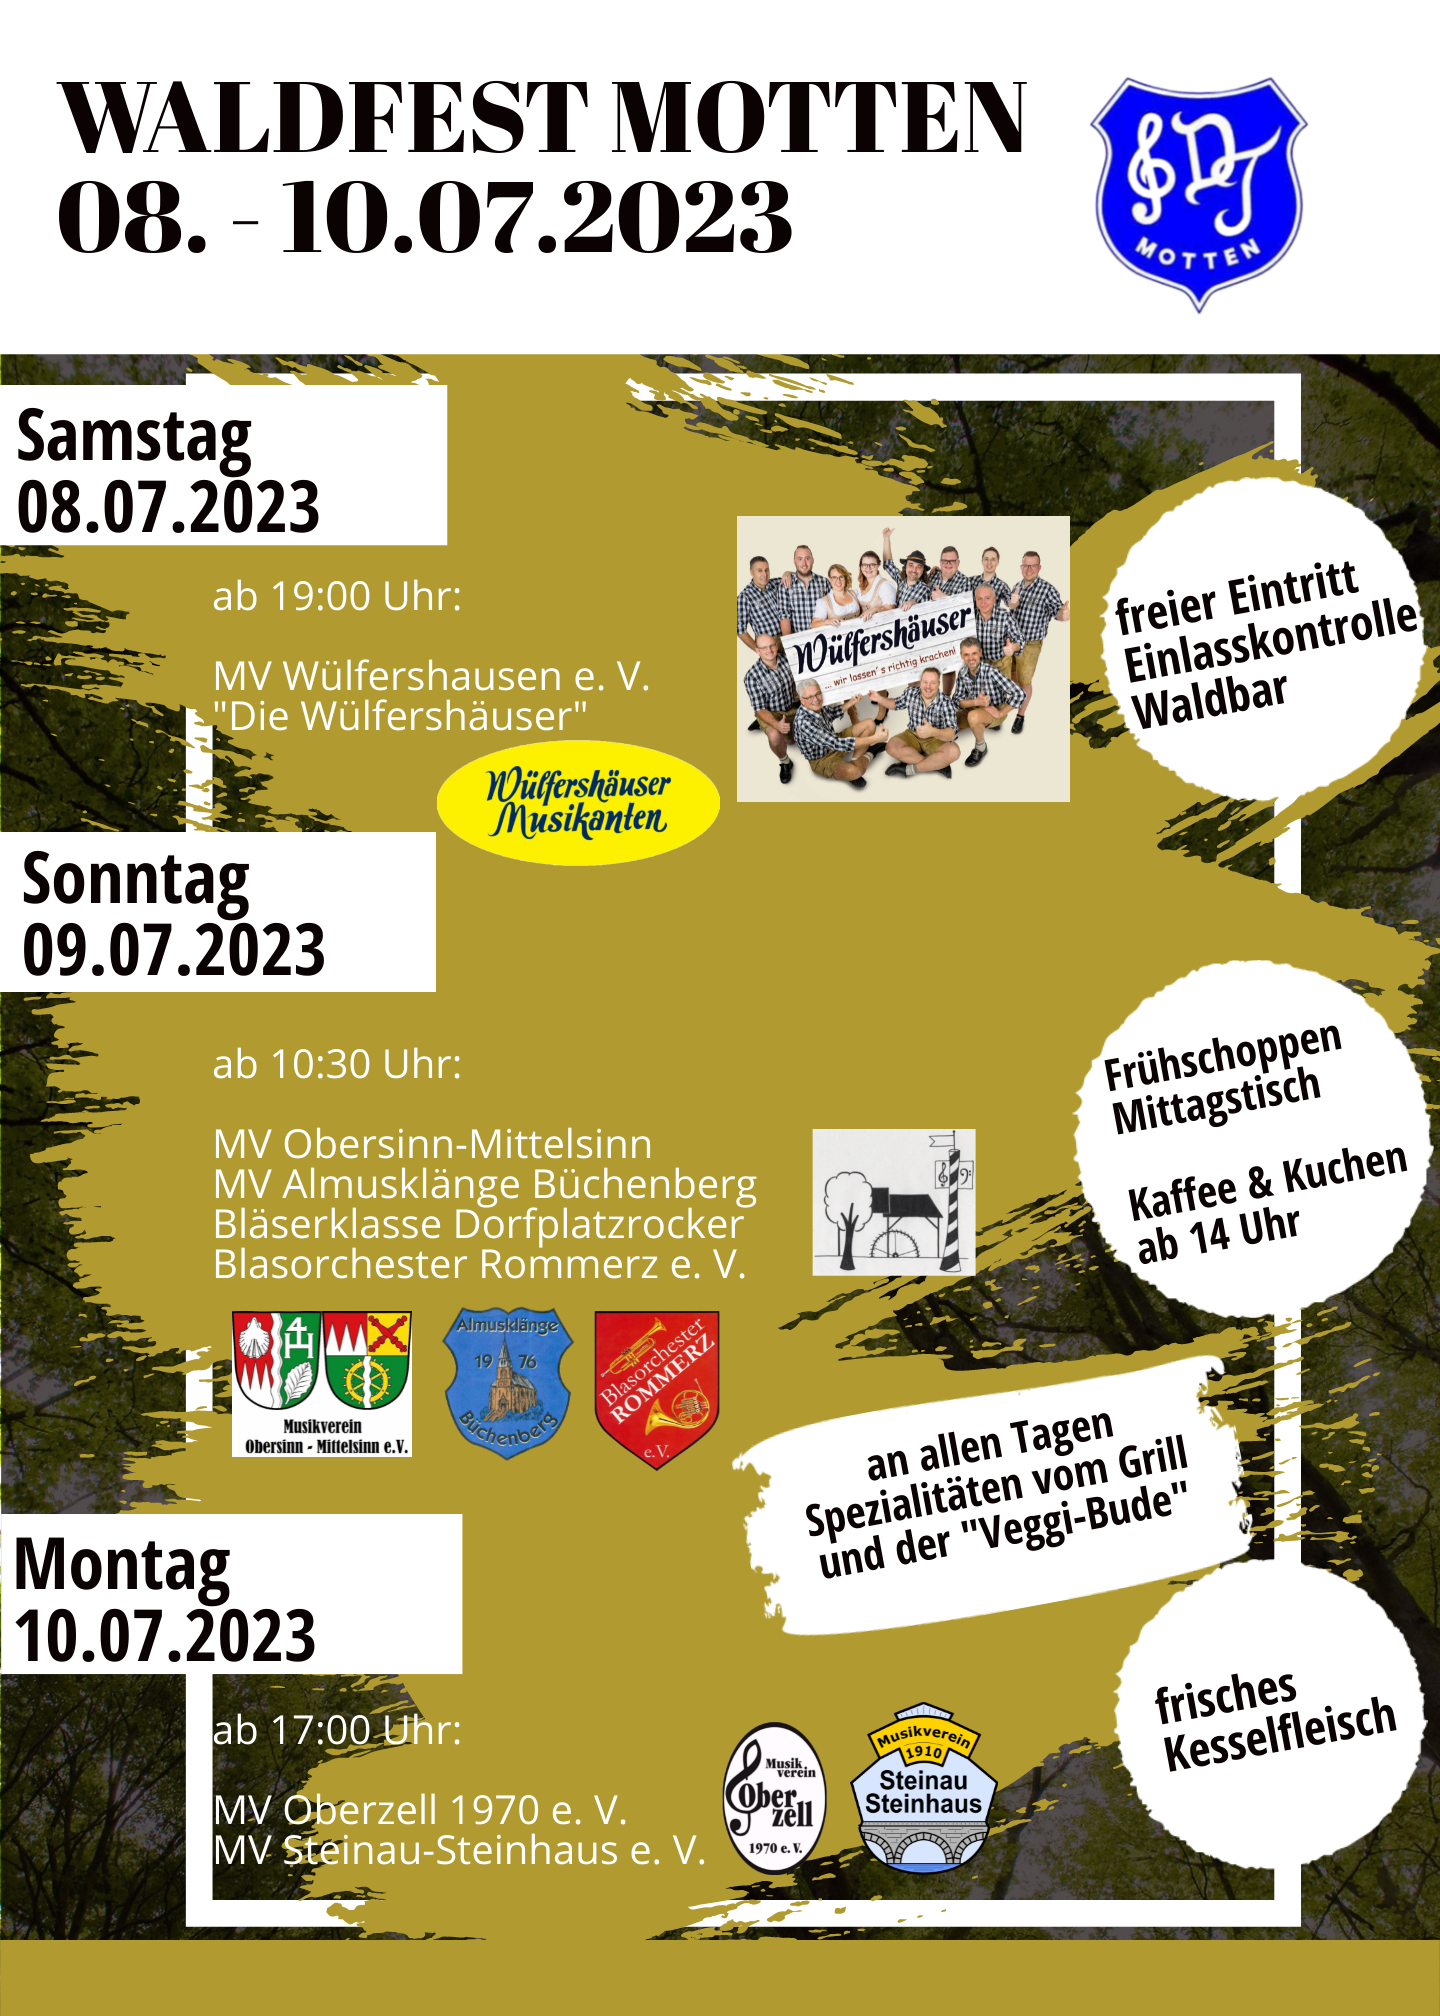 Waldfest Motten 2023